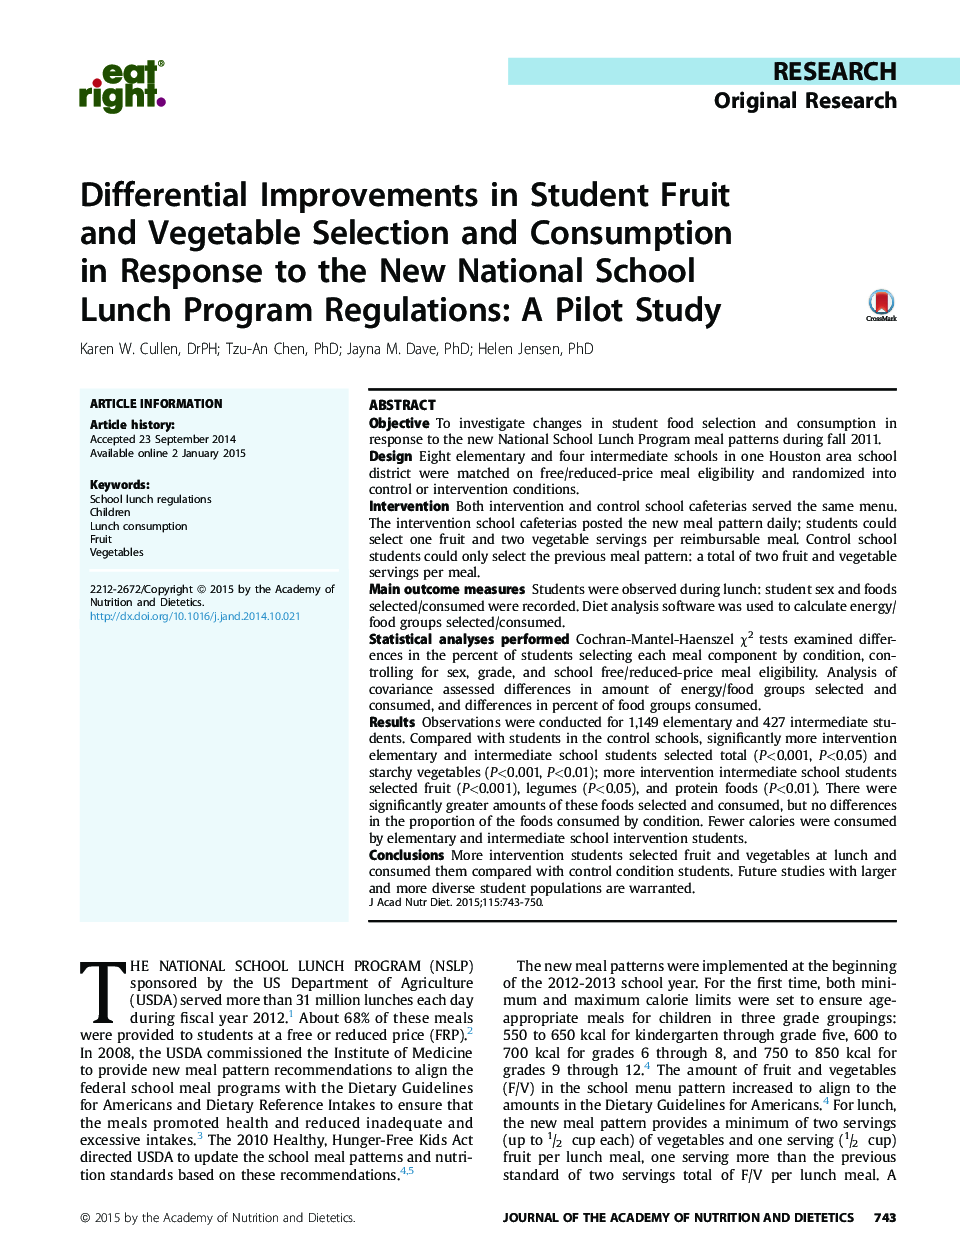 بهبود دیفرانسیلی در انتخاب و مصرف دانشجویی میوه و سبزیجات در پاسخ به مقررات برنامه ناهار مدرسه ملی جدید: یک مطالعه آزمایشی